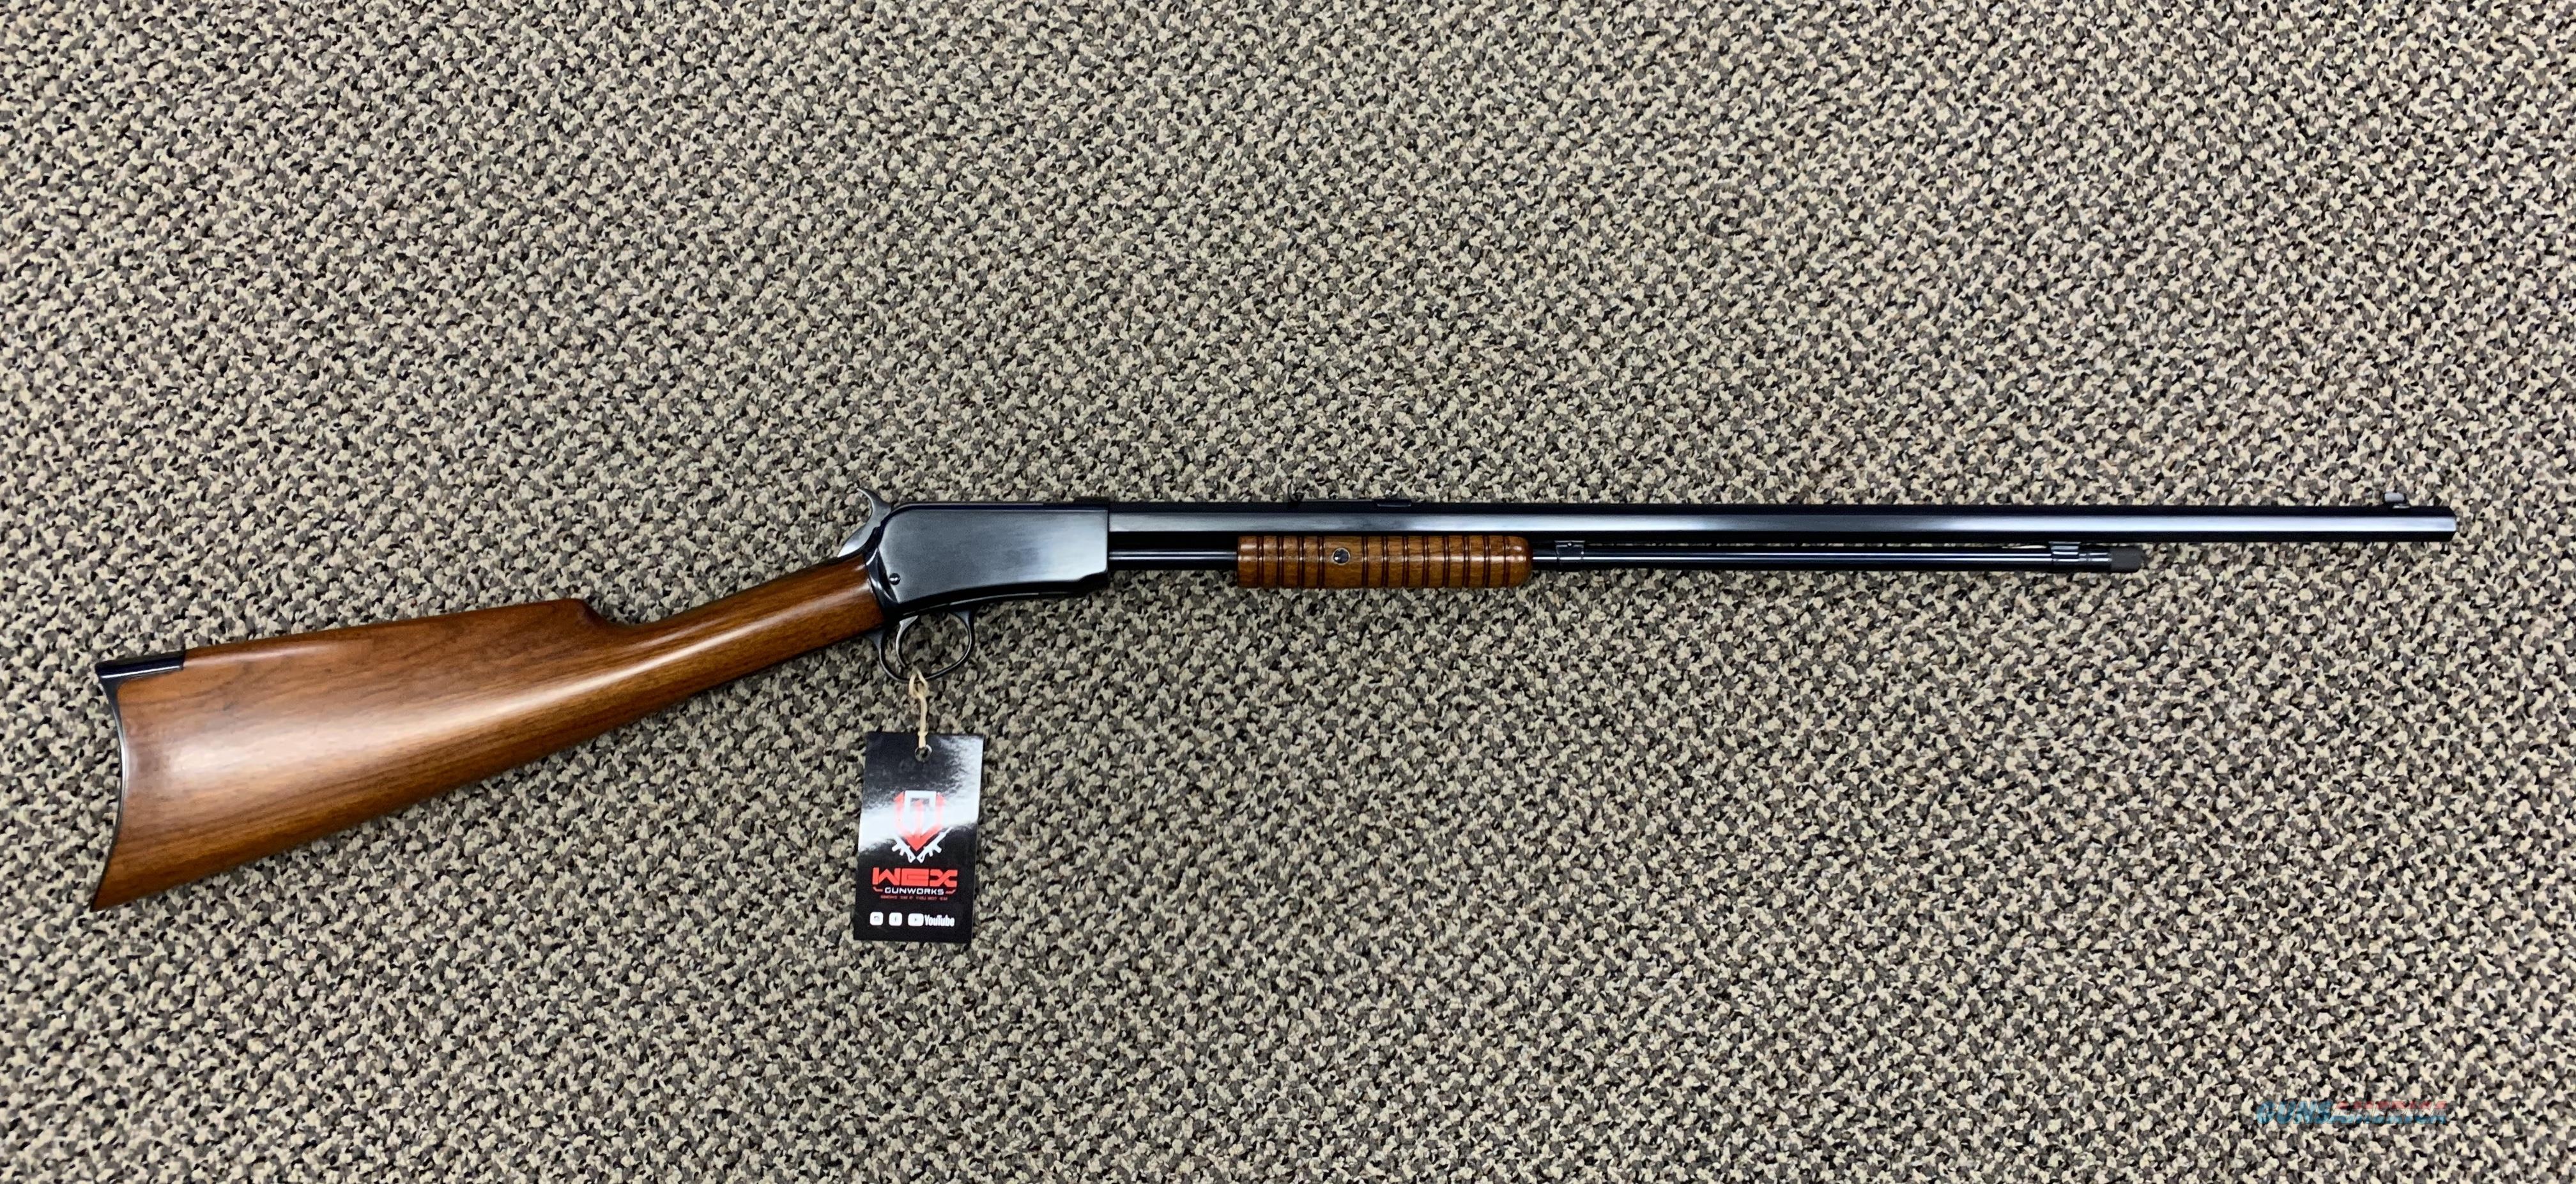 winchester model 90 22 short firing pin